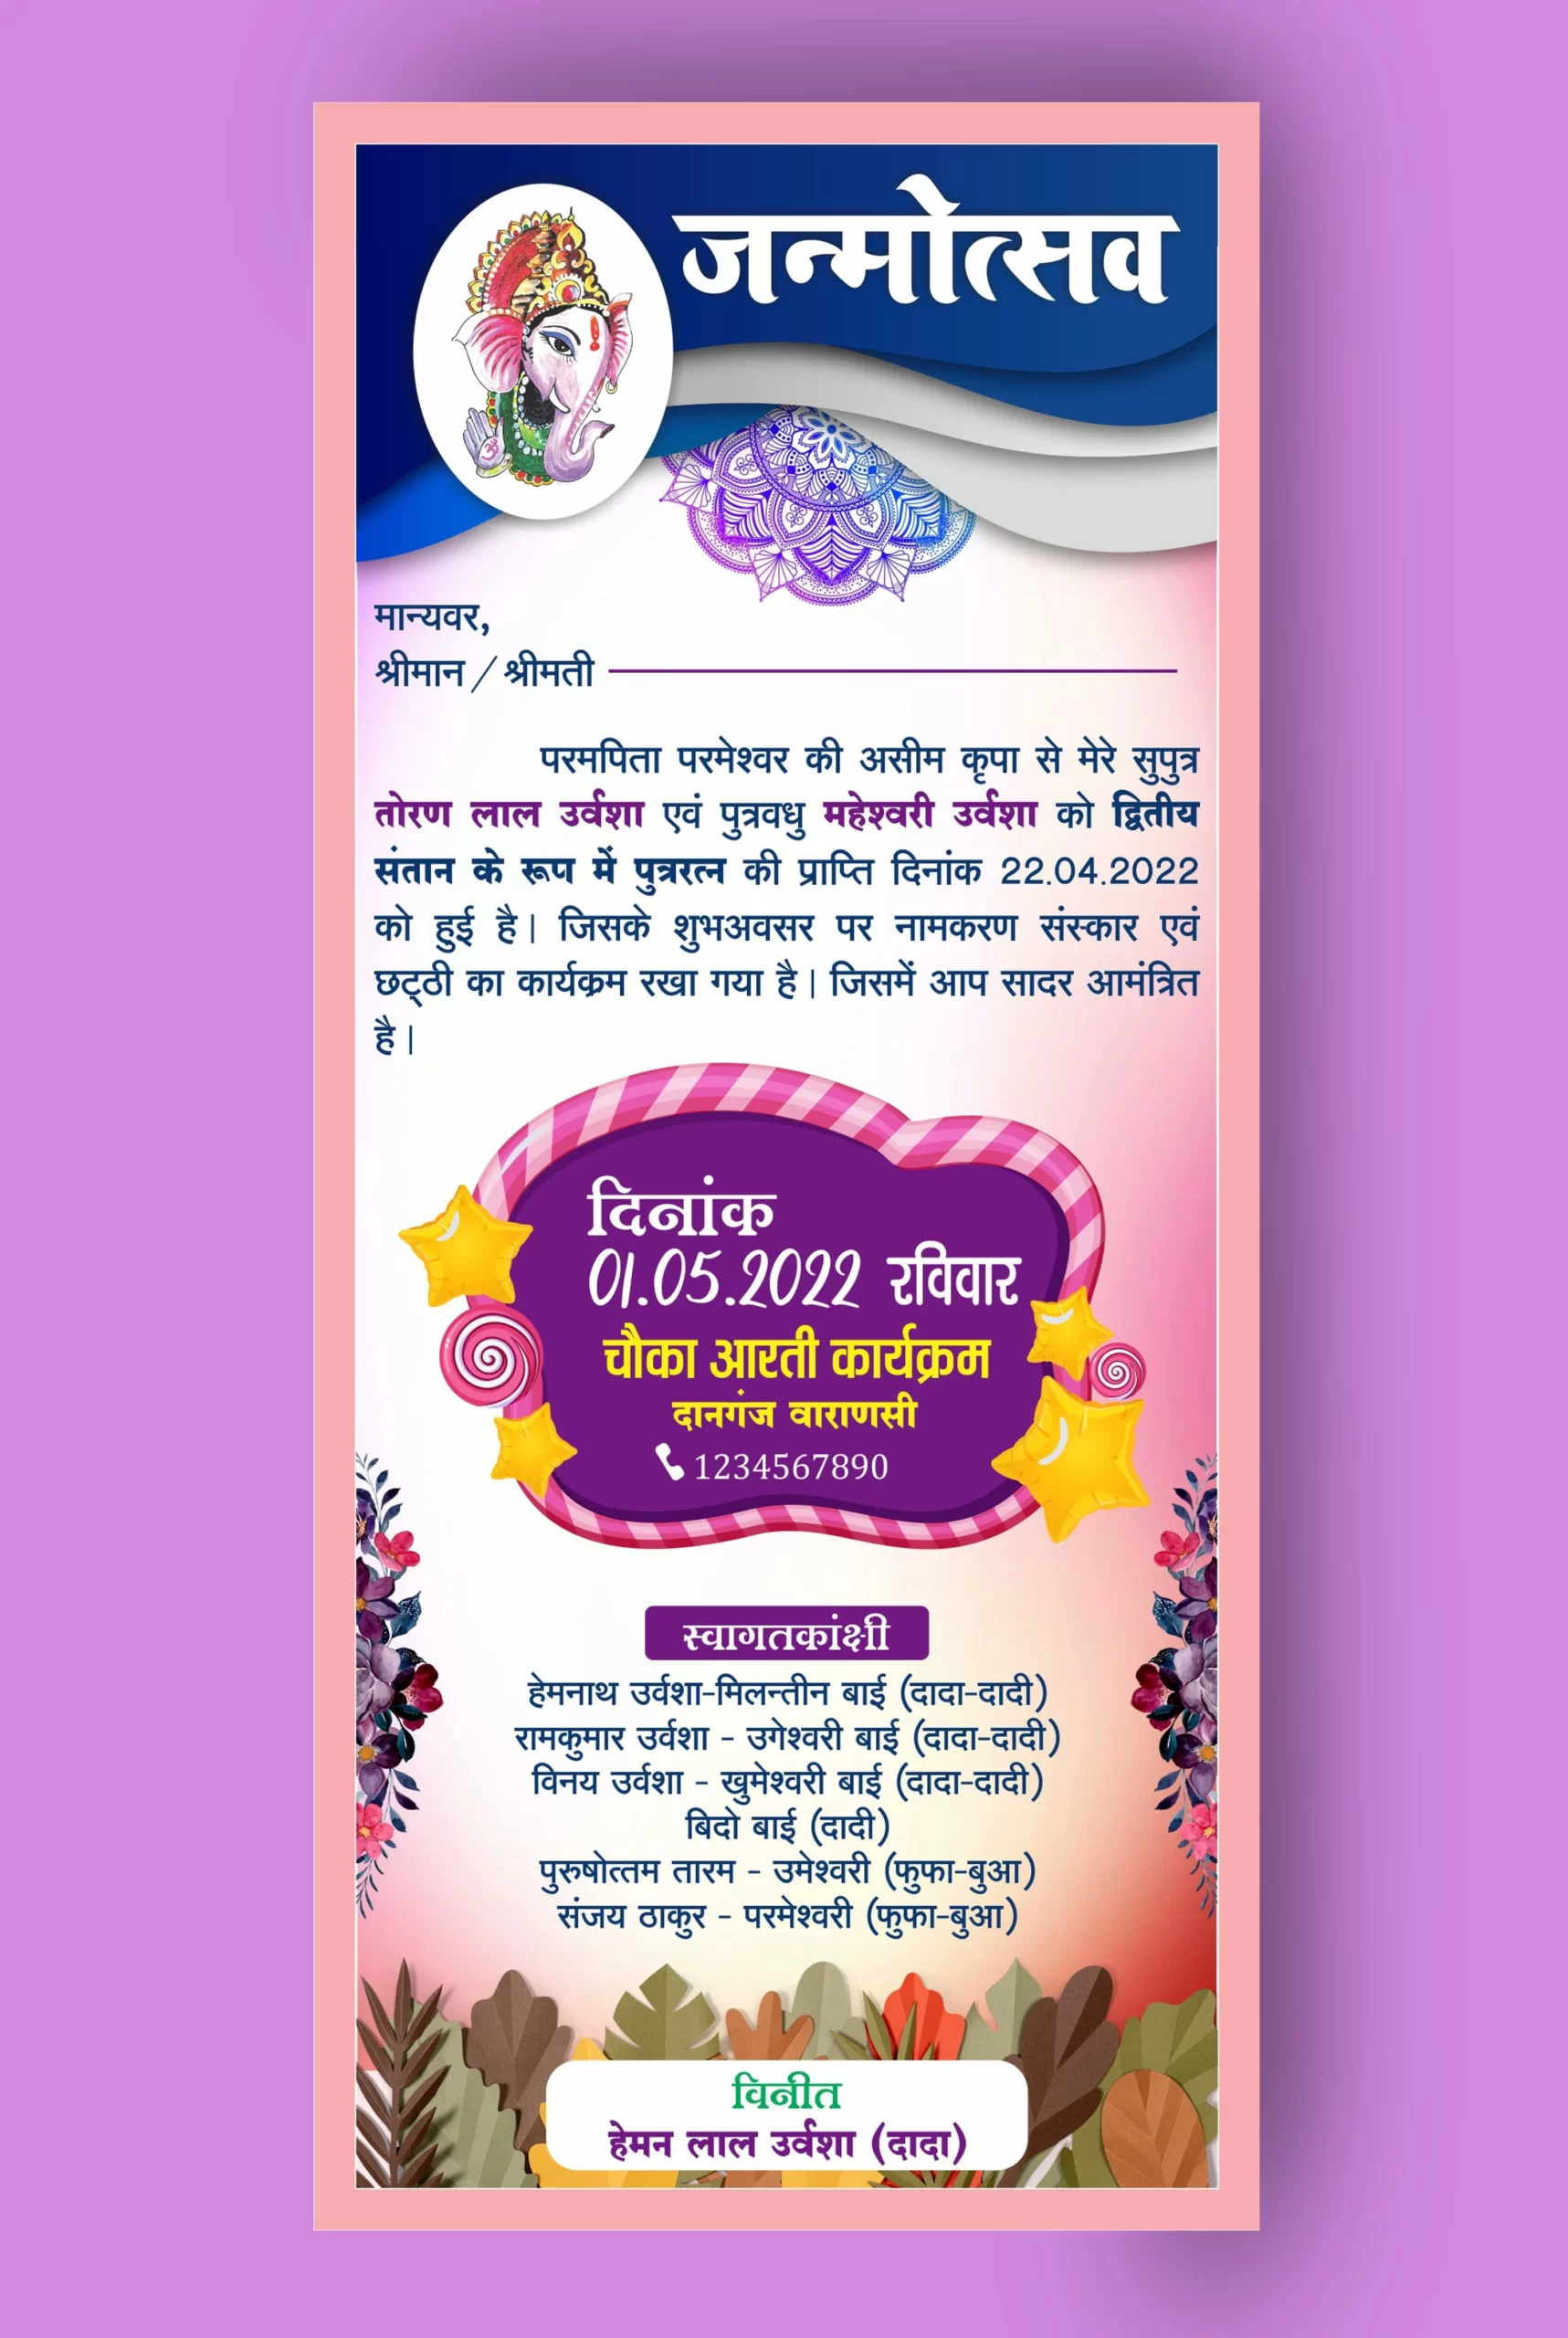 Namkaran invitation card in Hindi 290422